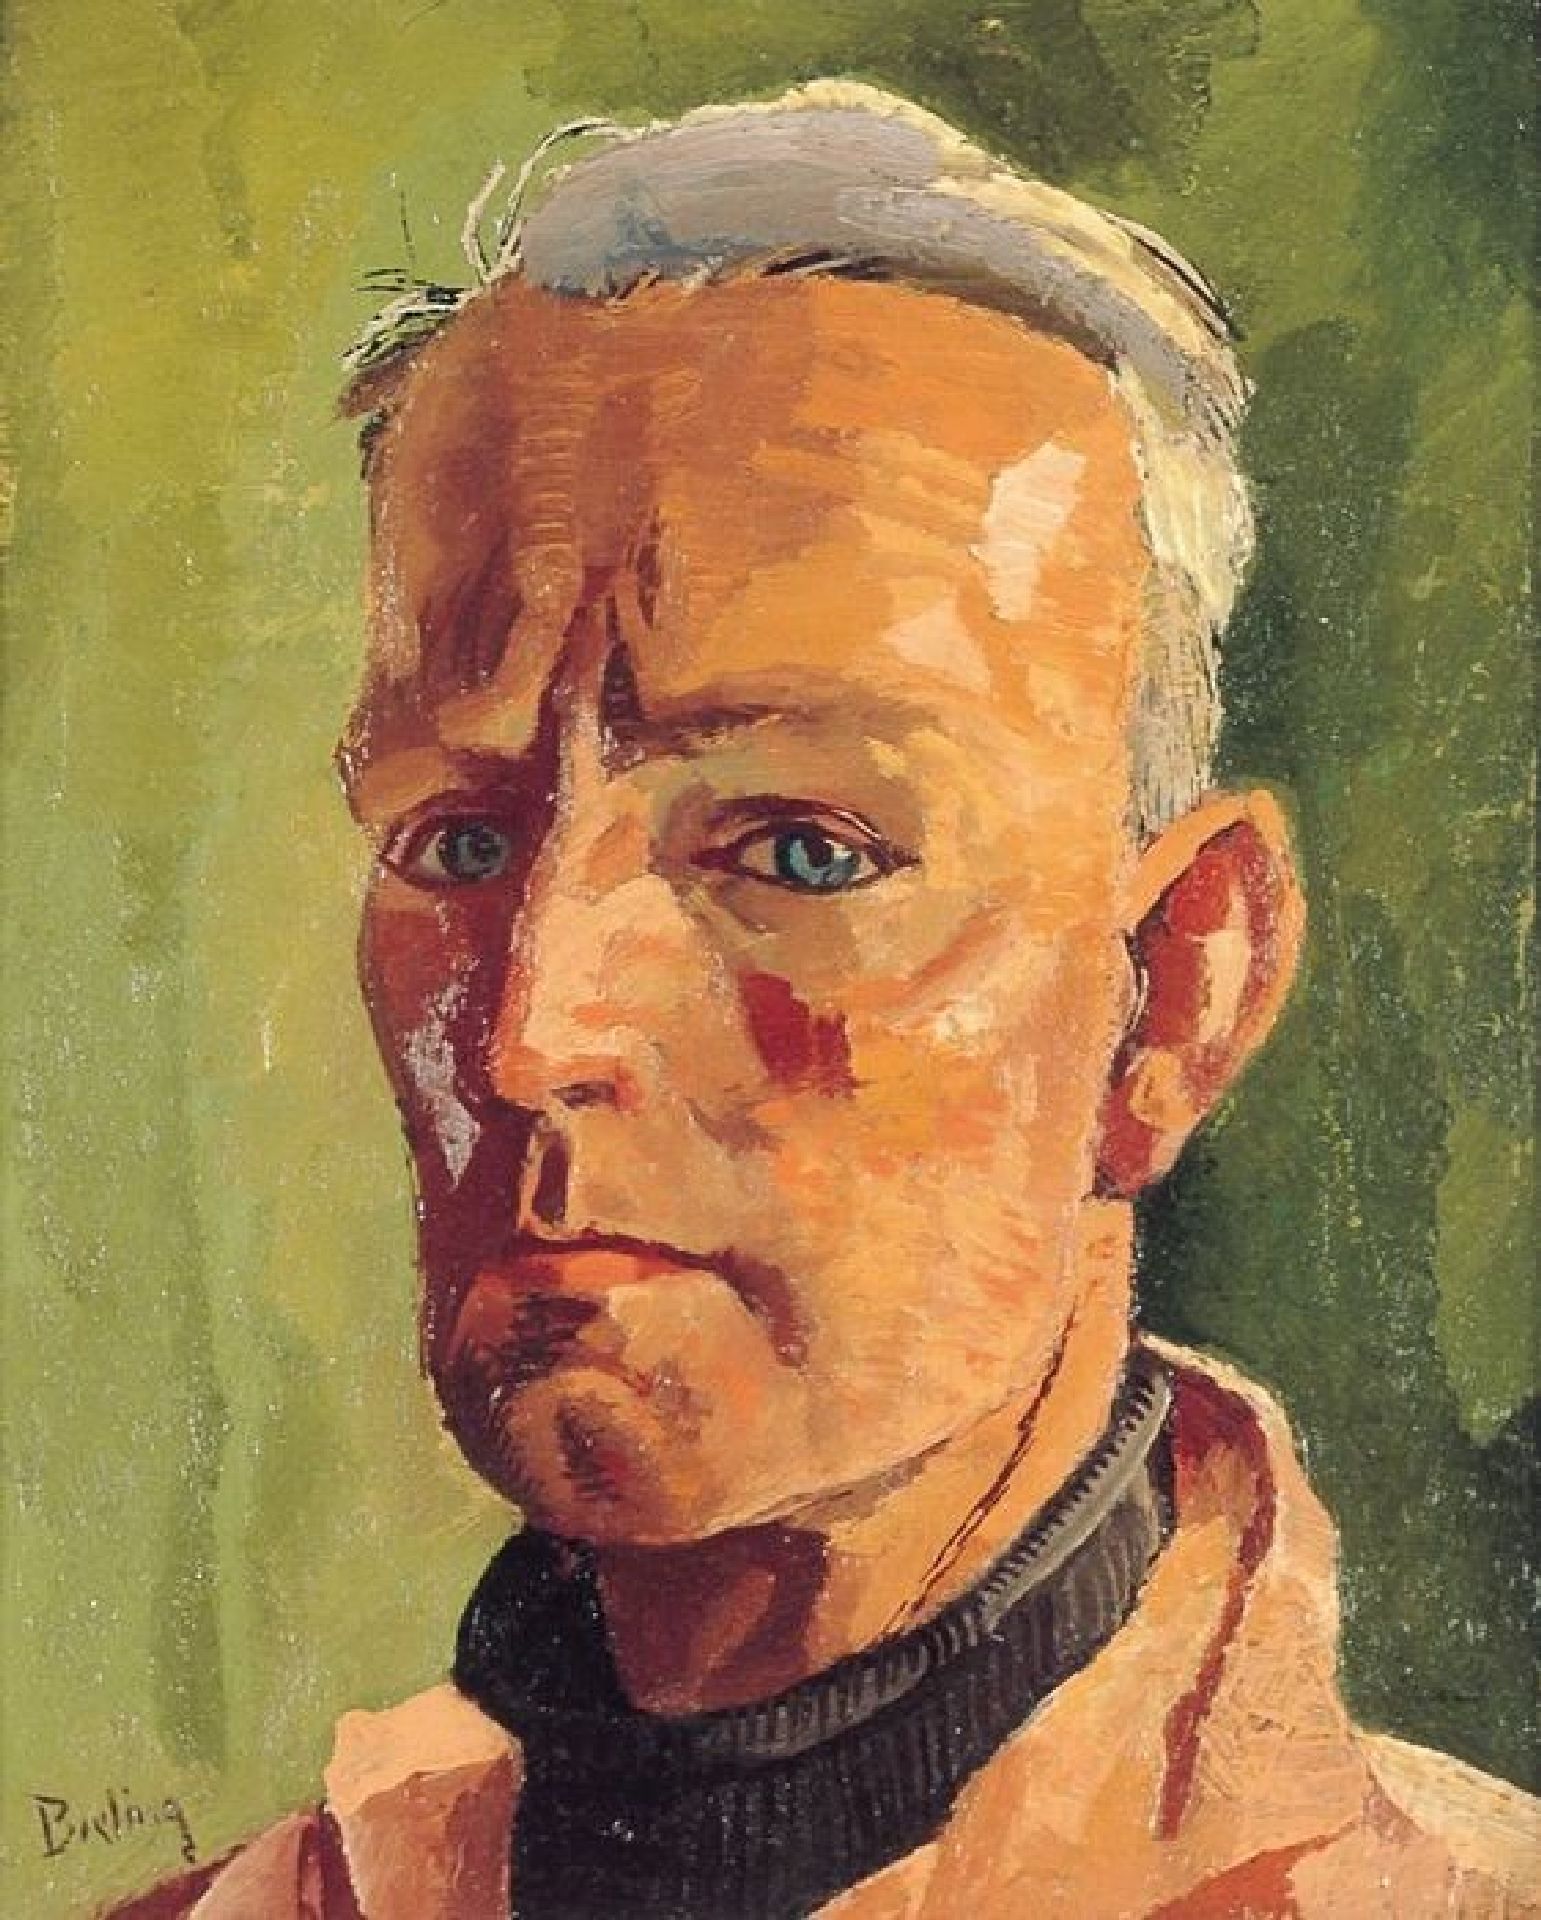 Portret van kunstenaar, kunstschilder, aquarellist, tekenaar en beeldhouwer Hermann Friederich 'Herman' Bieling